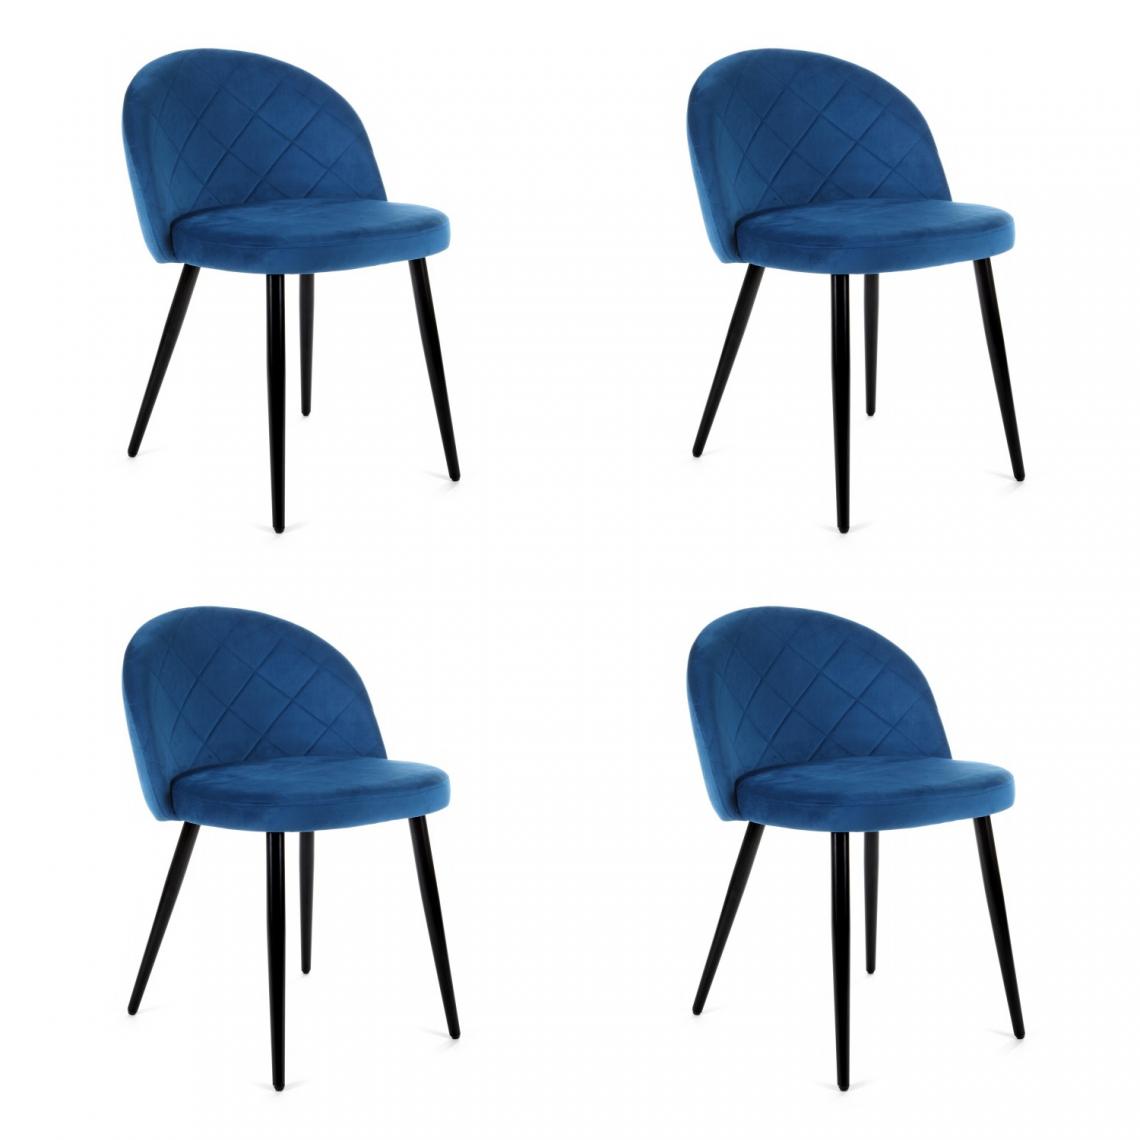 Hucoco - MORLI - Chaise rembourrée 4 pcs style moderne salon/salle à manger - 76x53x43 - Pieds en métal - Bleu - Chaises